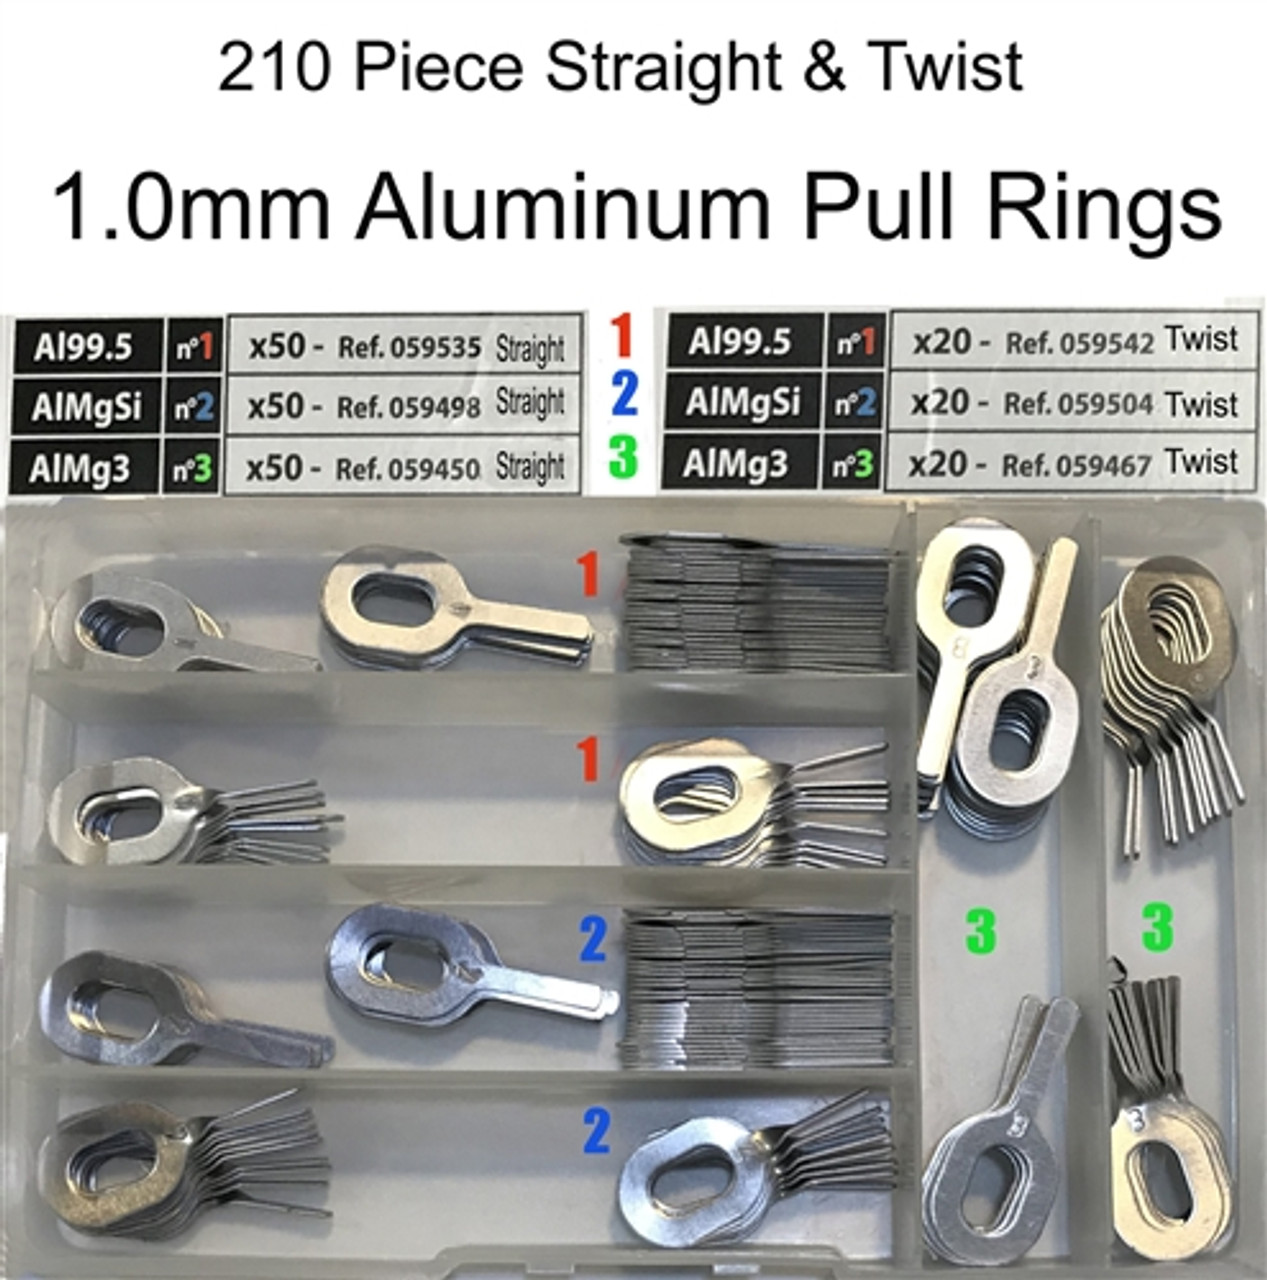 1.0mm Dent Pull Ring Kit - Straight & Twist Tabs